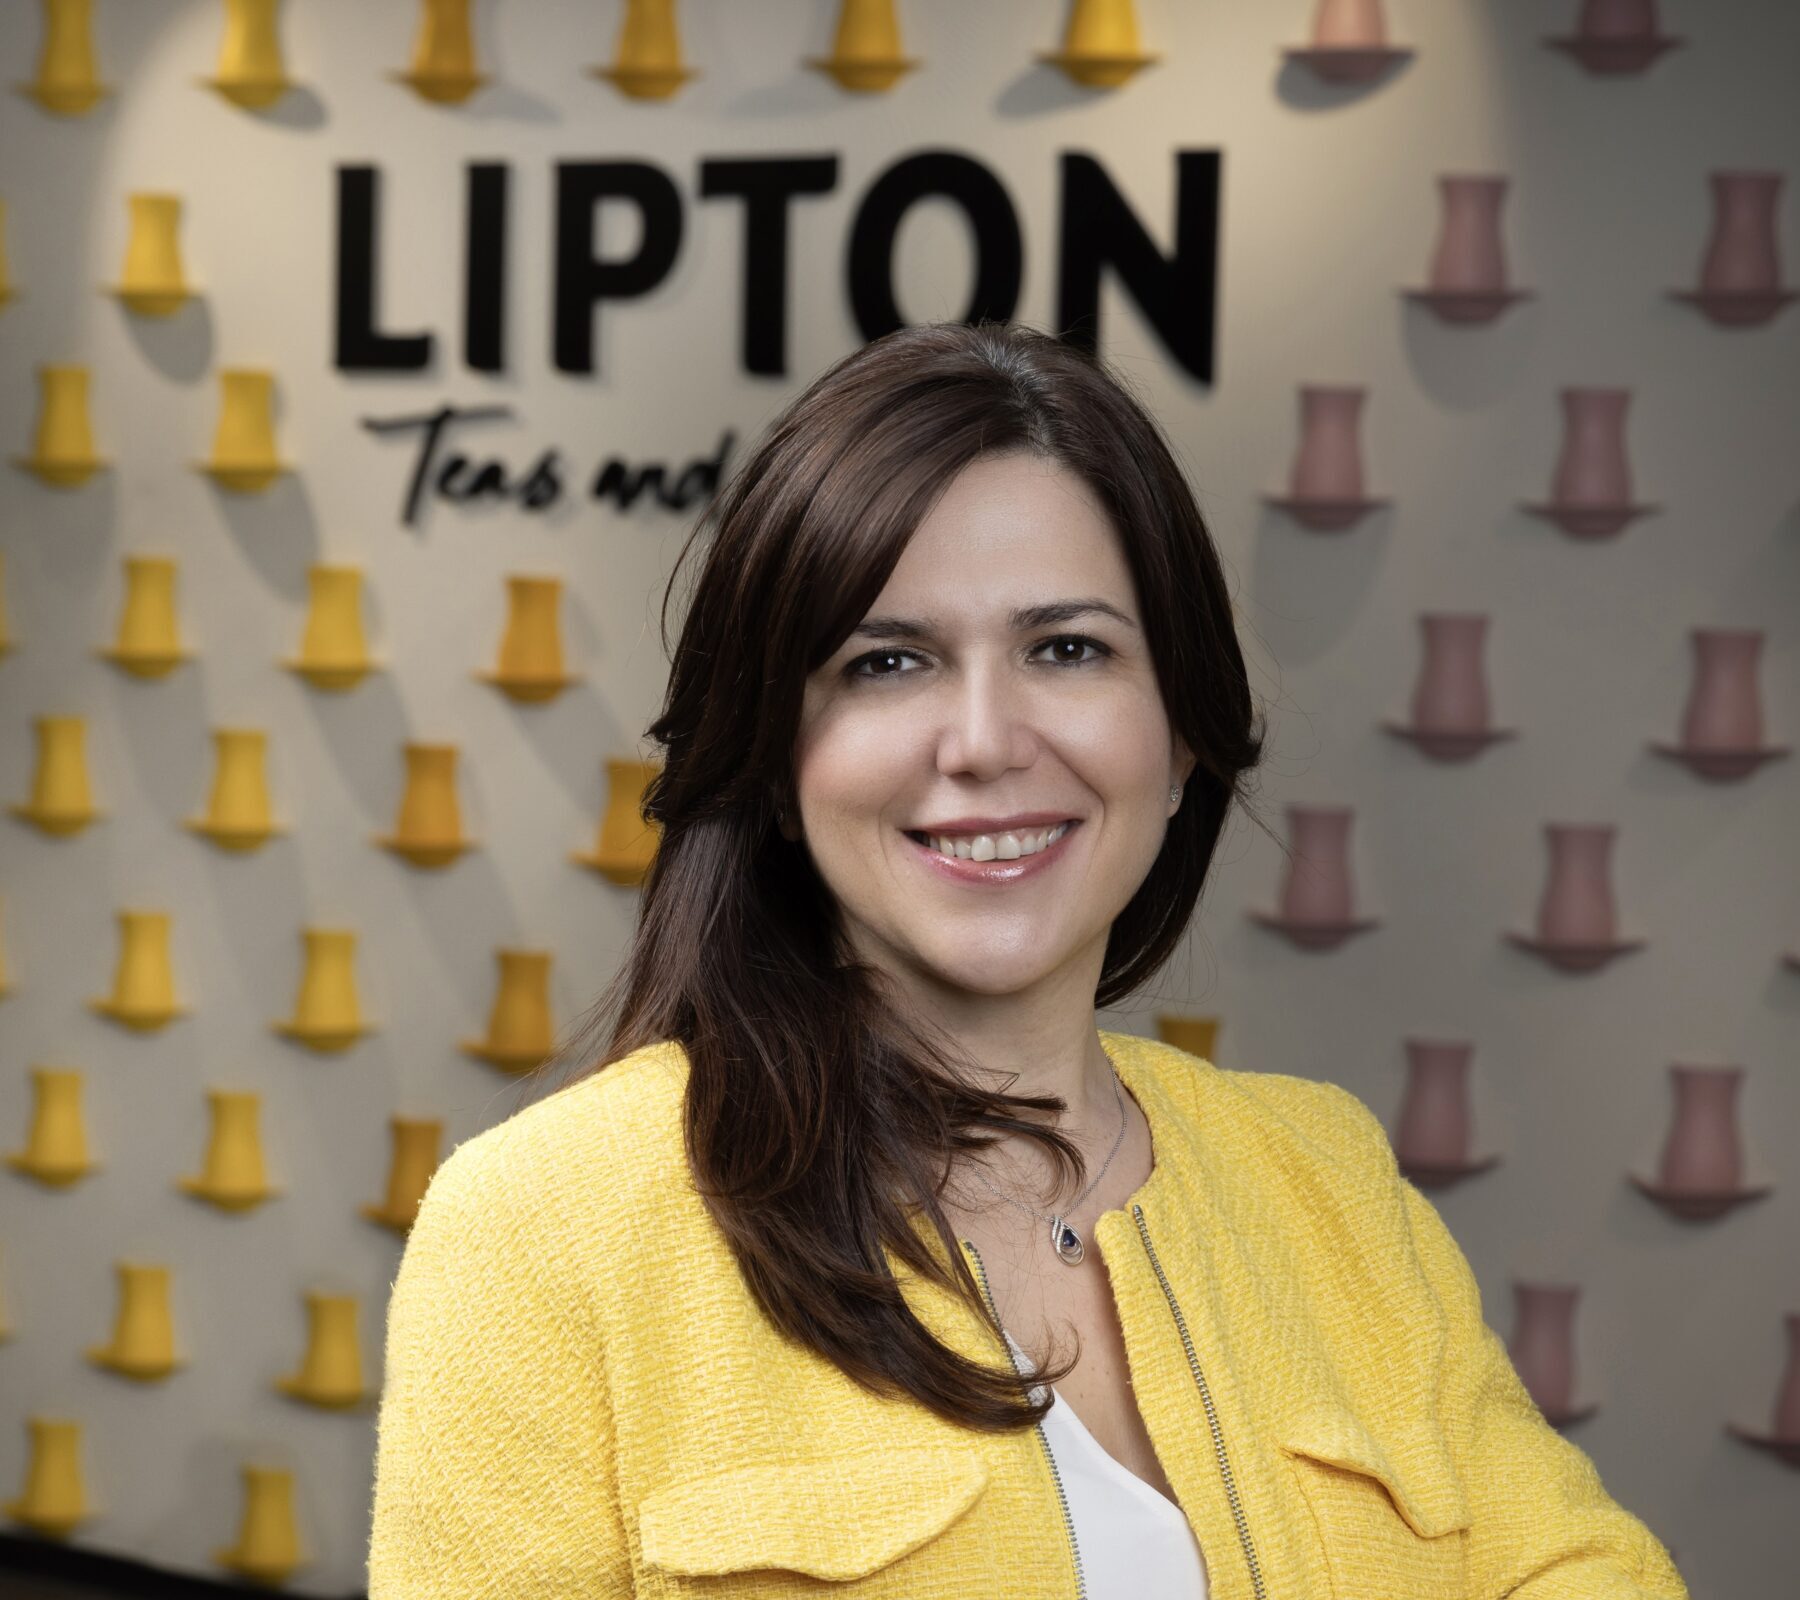 Lipton Türkiye’nin Yeni Pazarlama Direktörü  İdil Ziyaoğlu Alpaslan Oldu